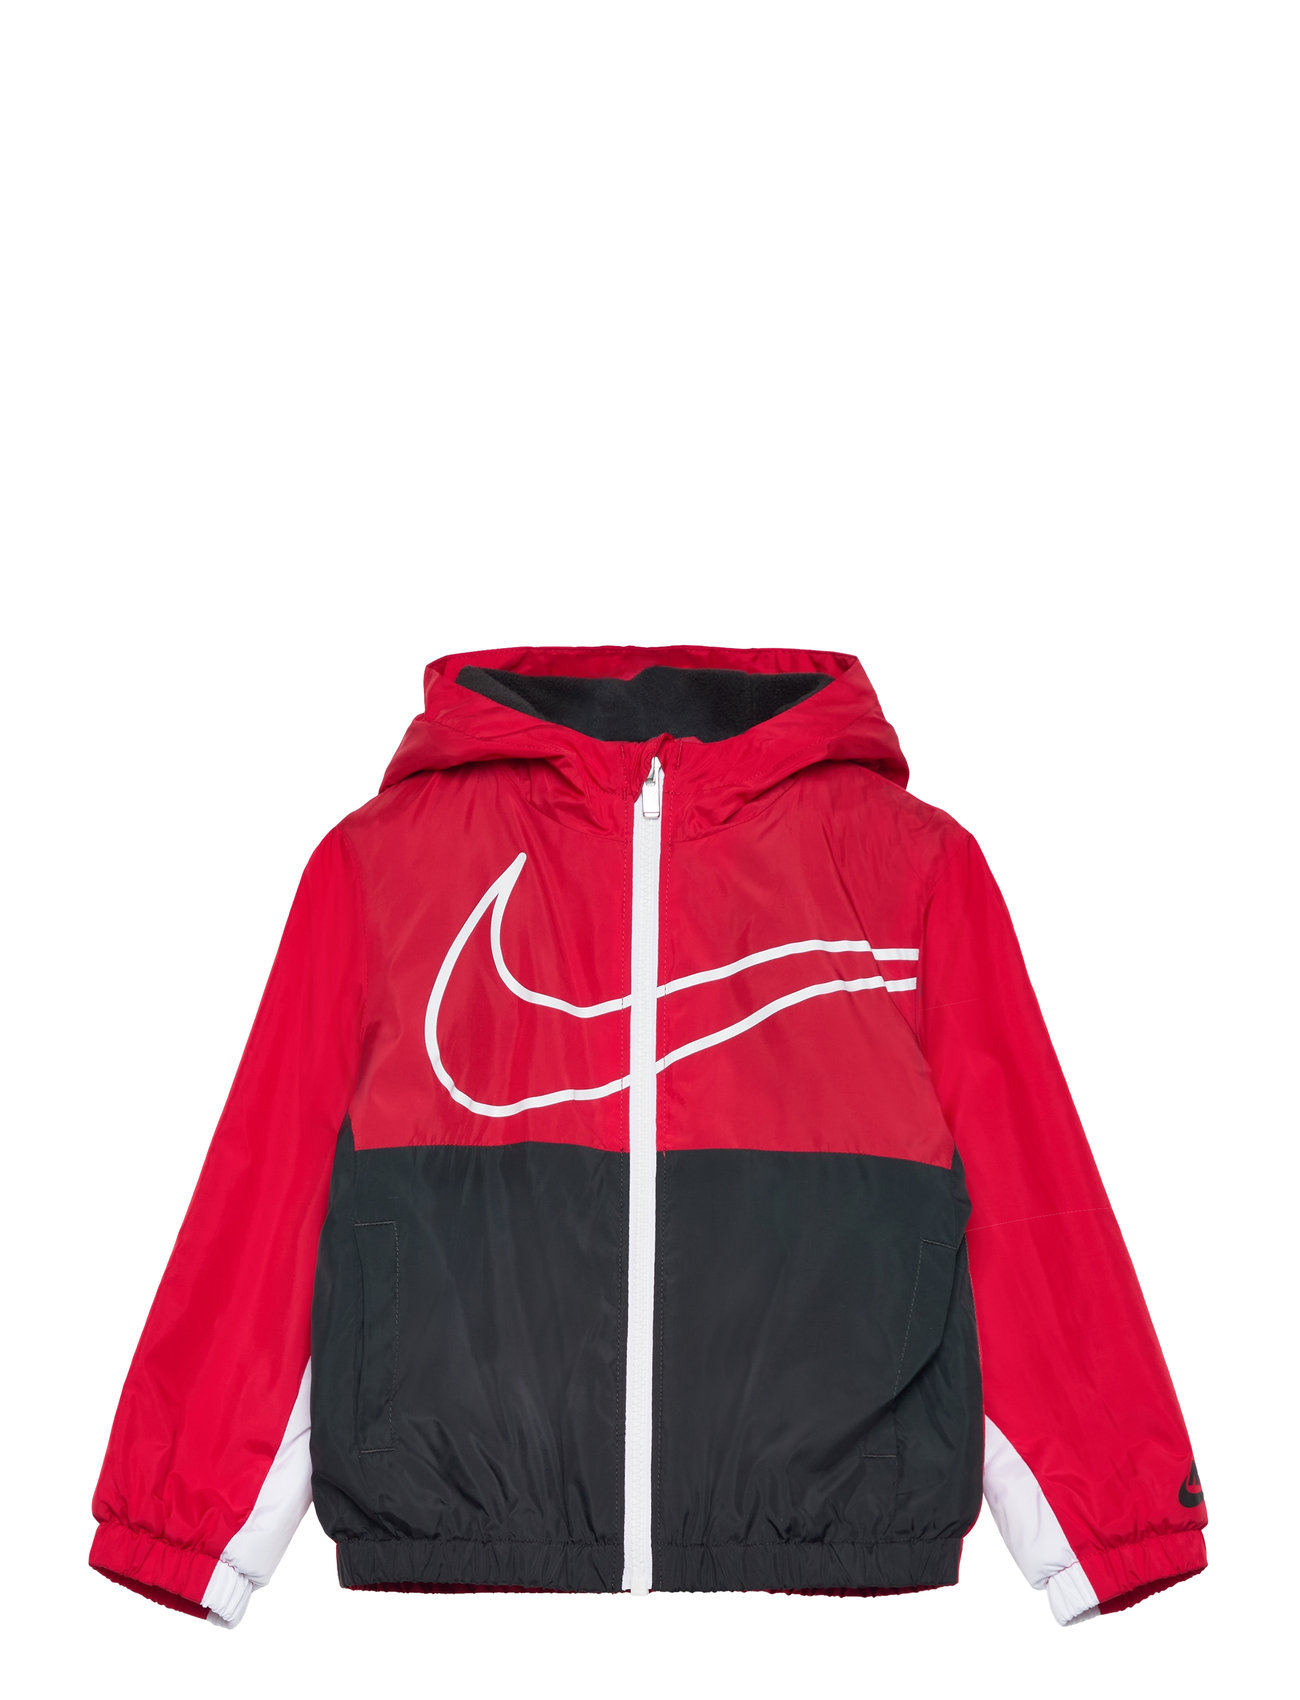 Nkb Key Item Fleece Lined Wind Sport Jackets & Coats Windbreaker Red Nike